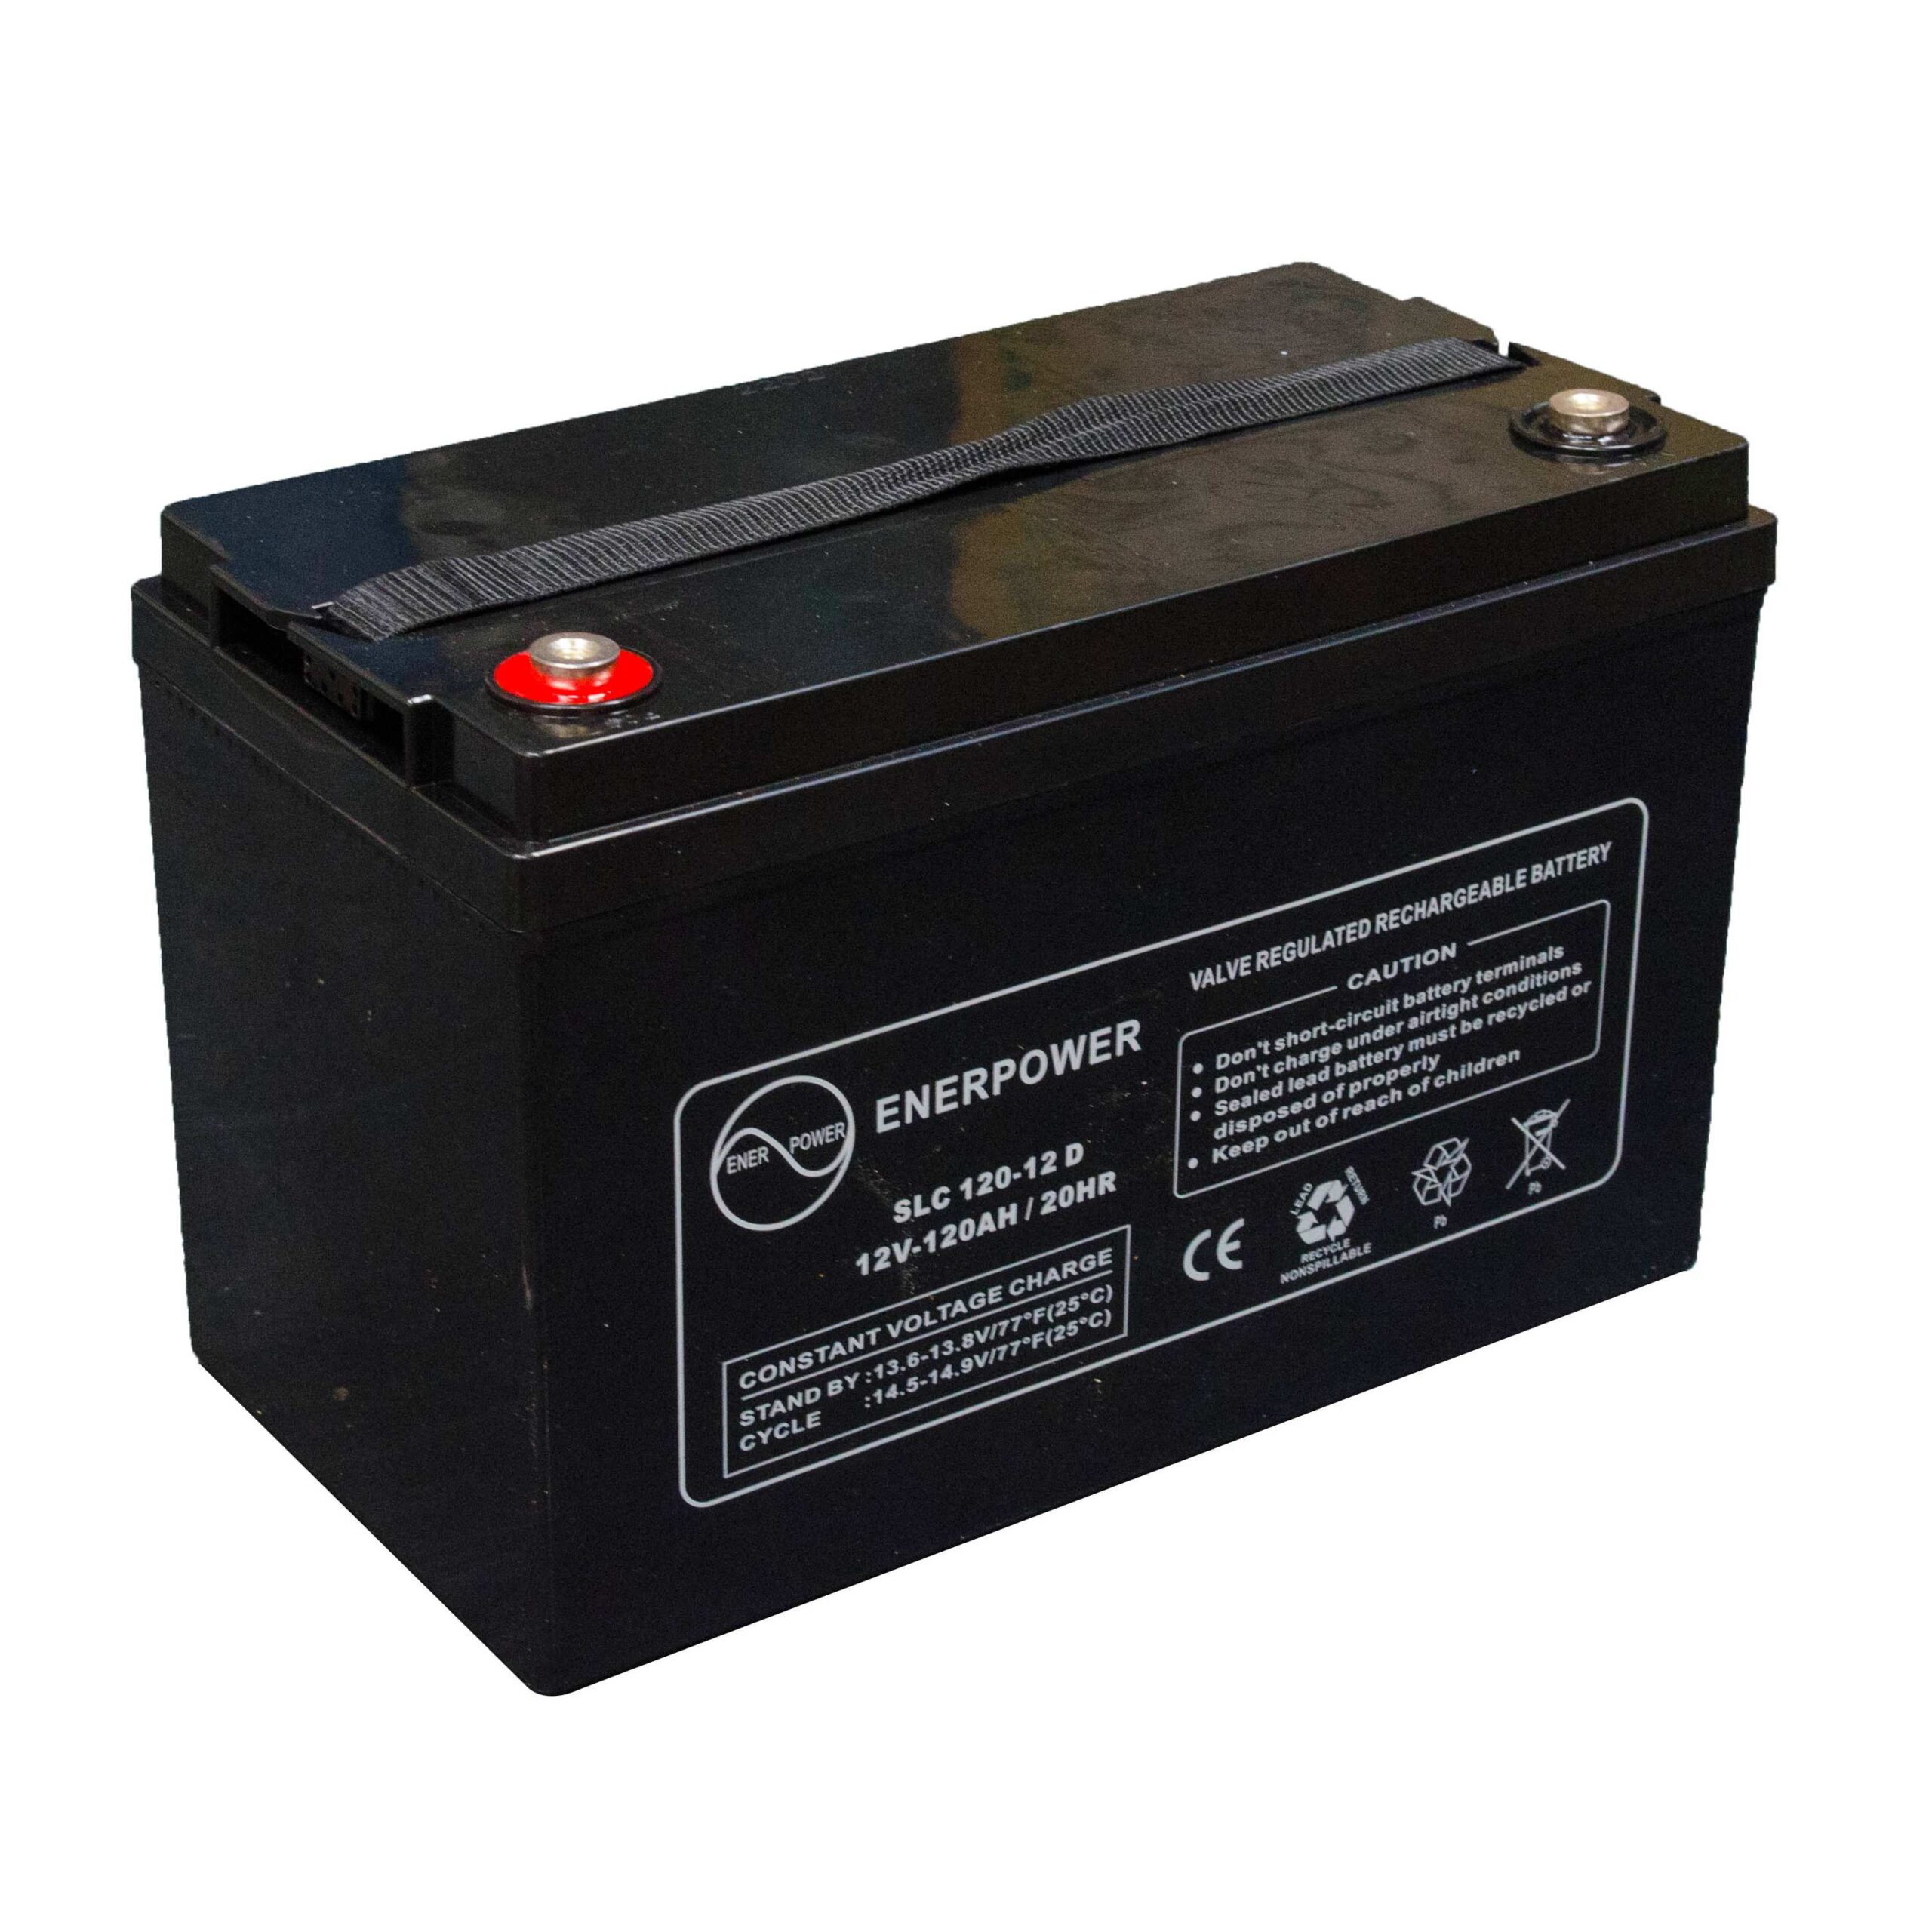 SLC 120-12 12V 120Ah AGM ENERPOWER Batterie